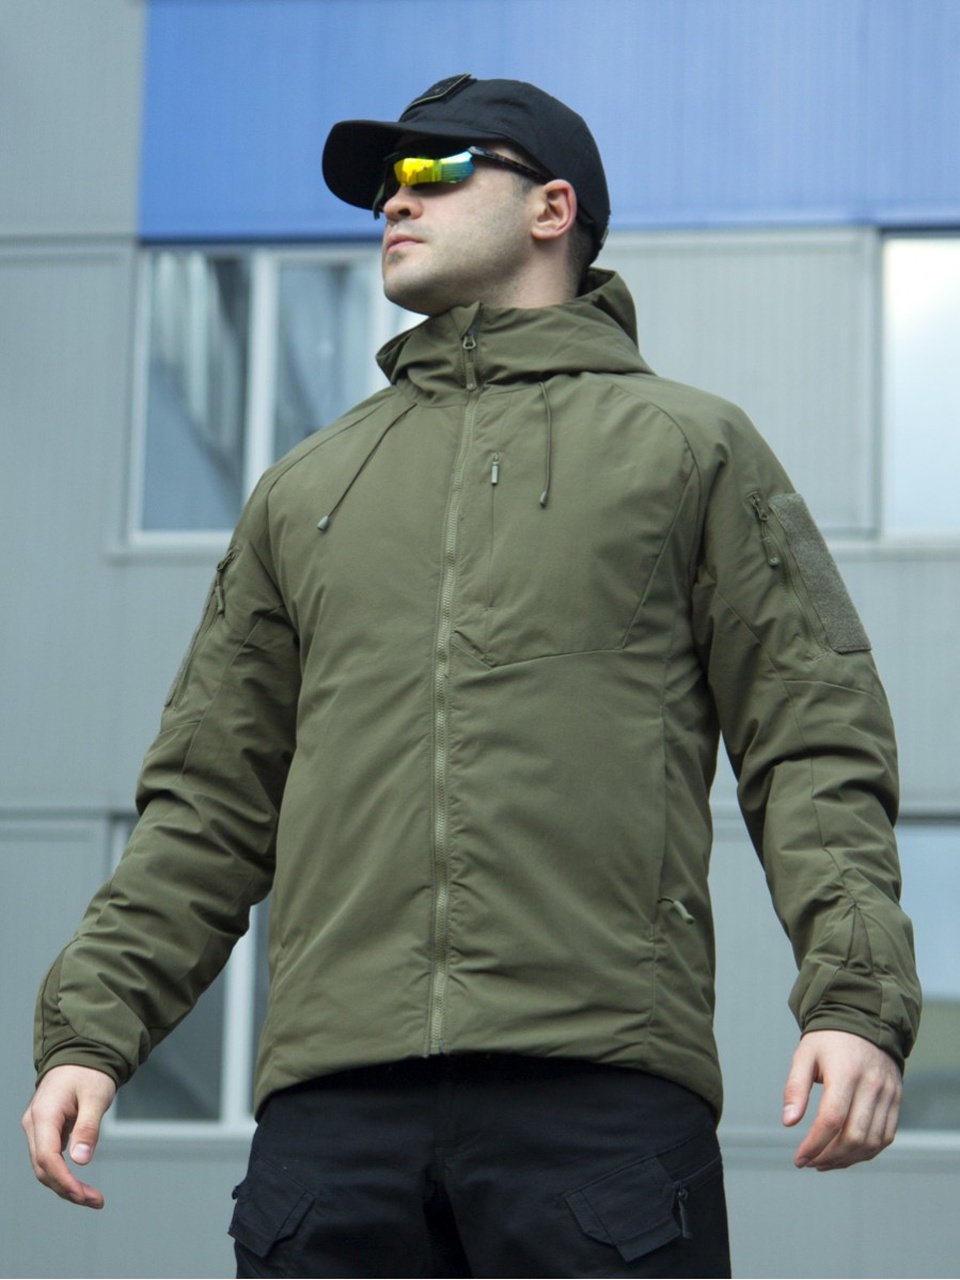 Куртка мужская Winter Light 3й слой - 8 700 ₽, заказать онлайн.